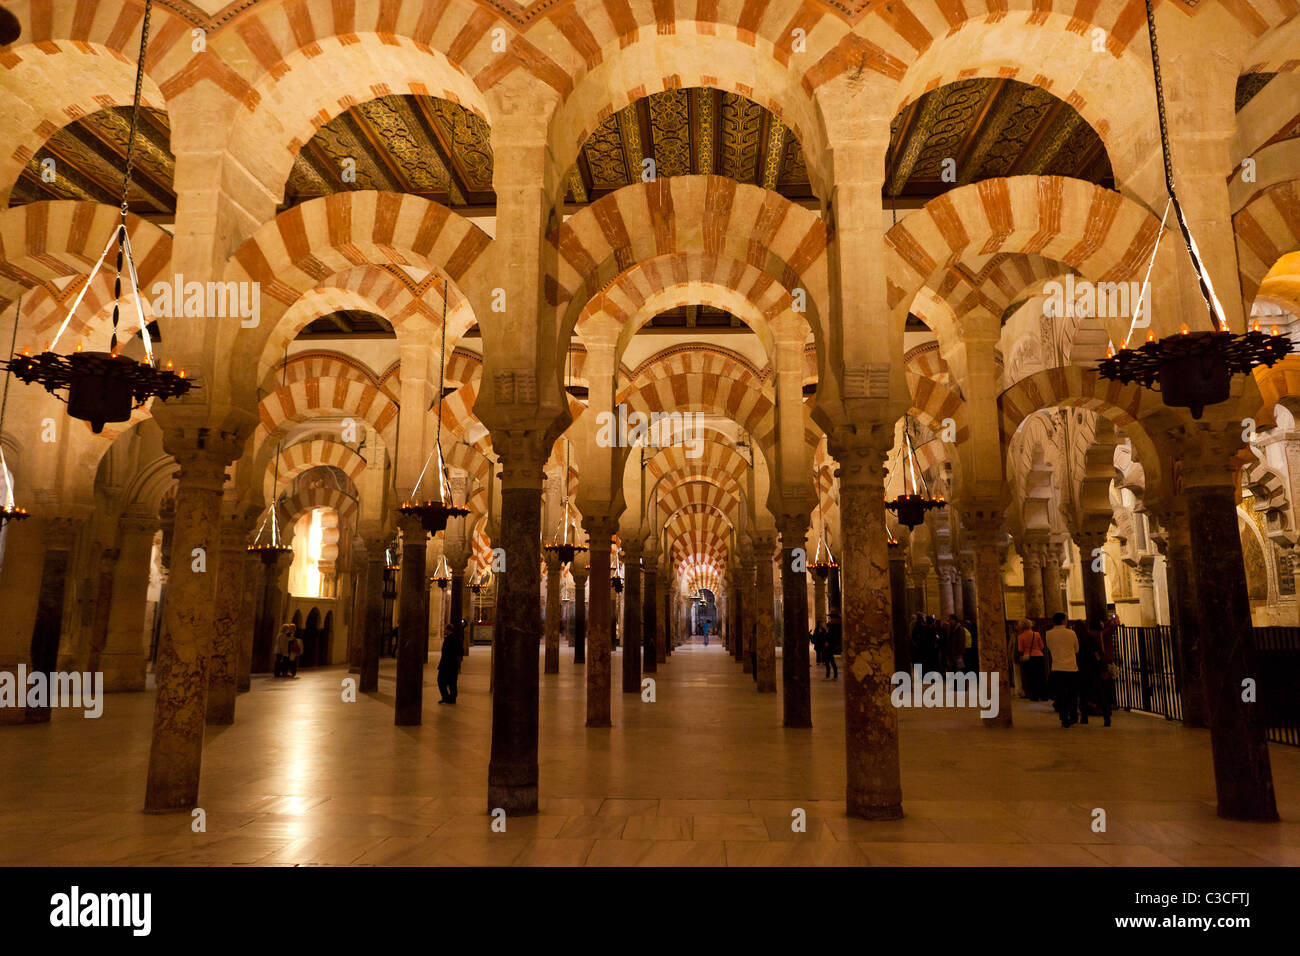 Das Innere der Mesquita, Cordoba Spanien Stockfoto